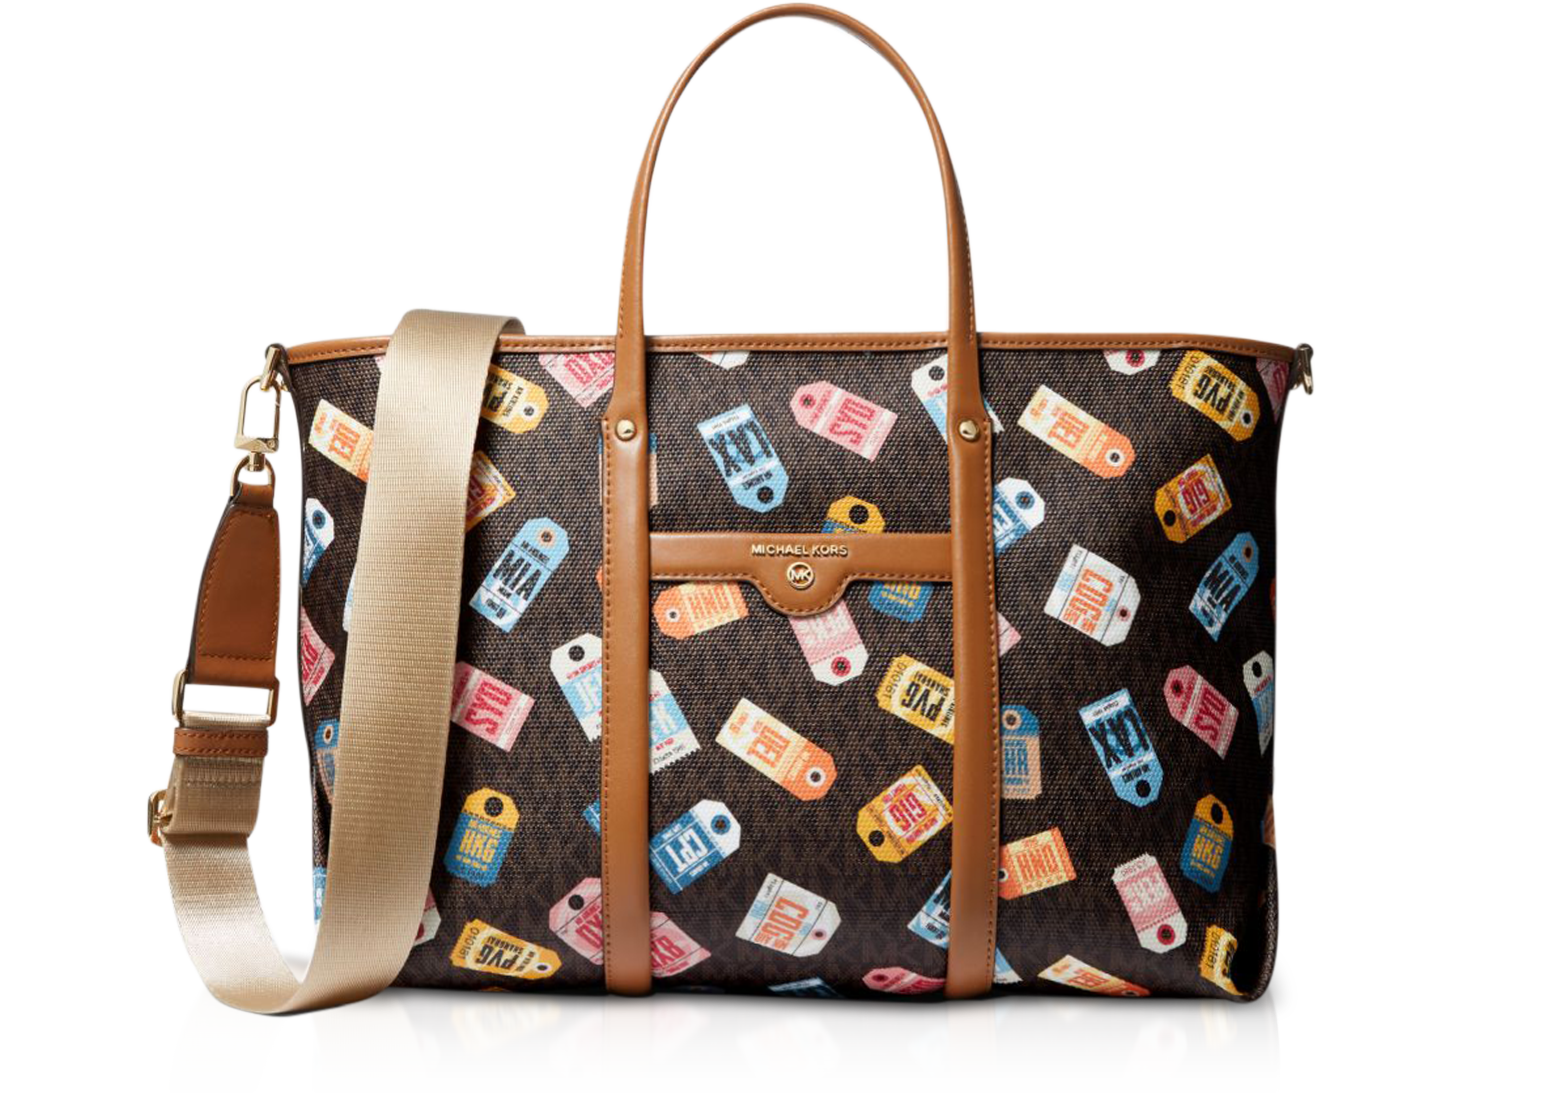 Buy Michael Kors Tote Bag with Brand Print